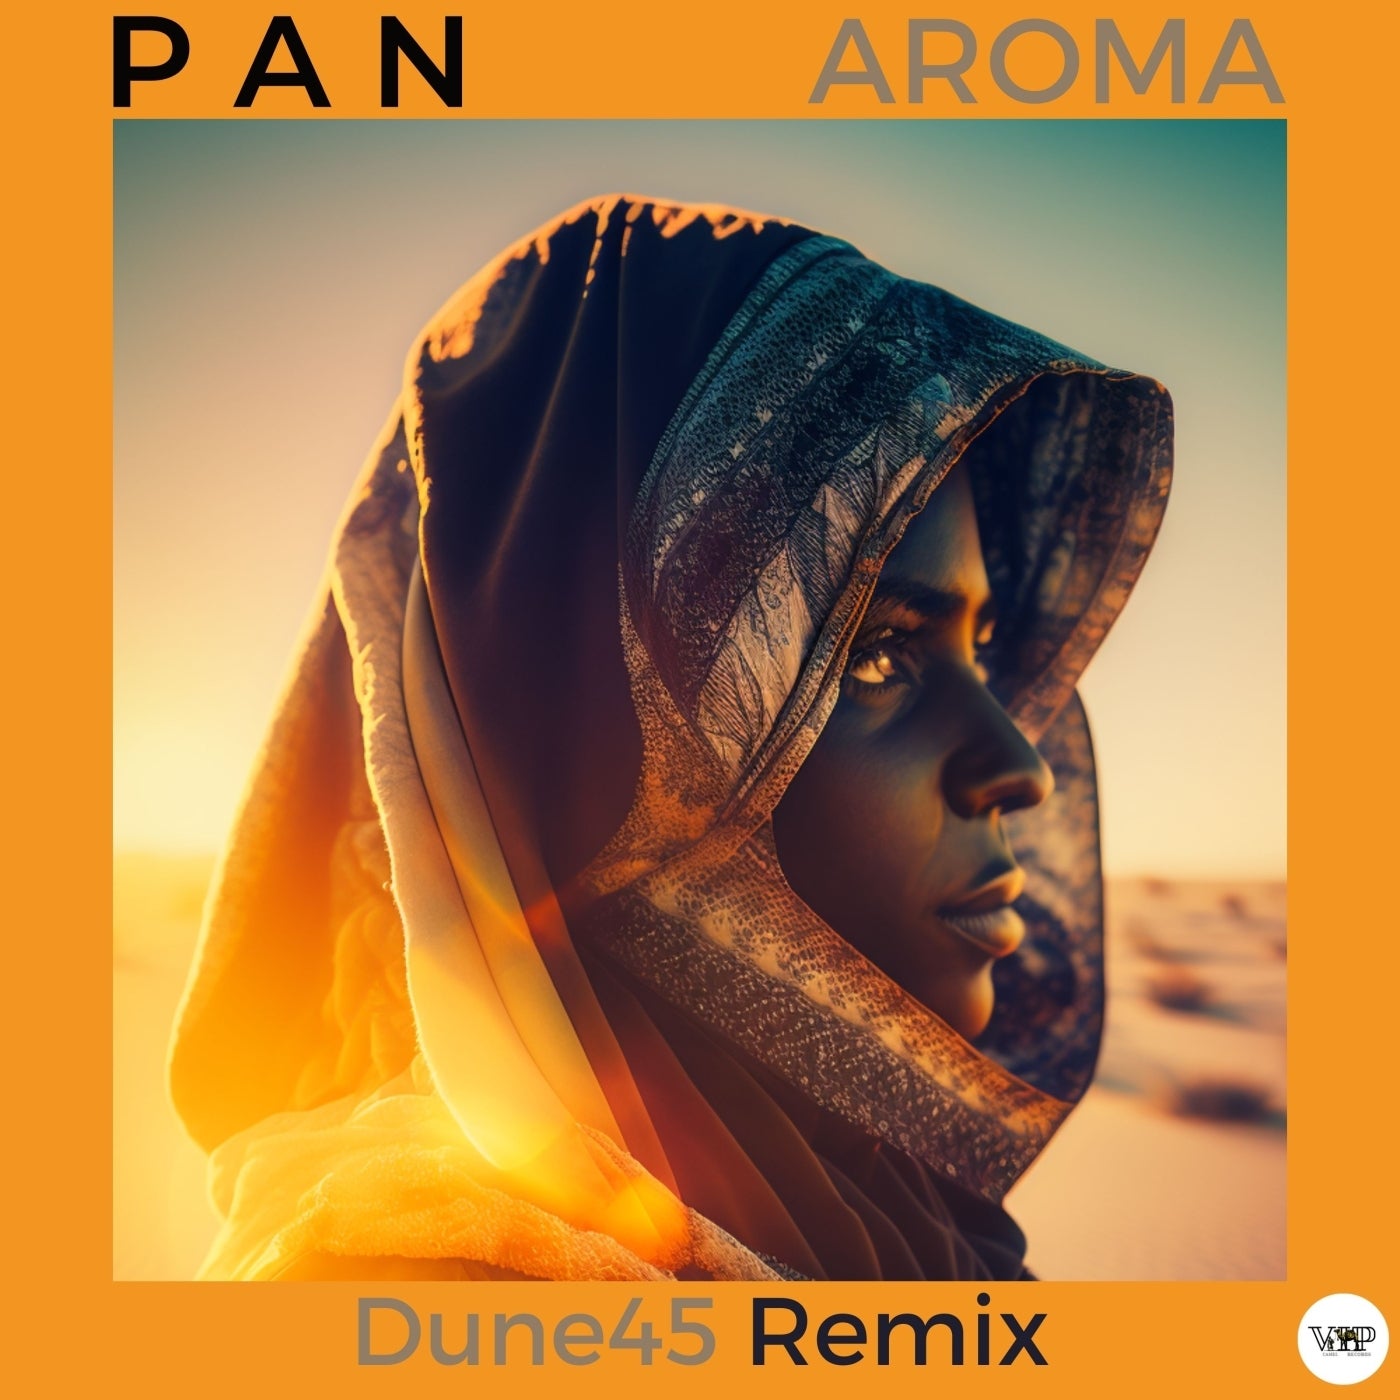 P A N, CamelVIP – Aroma (Dune45 Remix) [CVIP068]